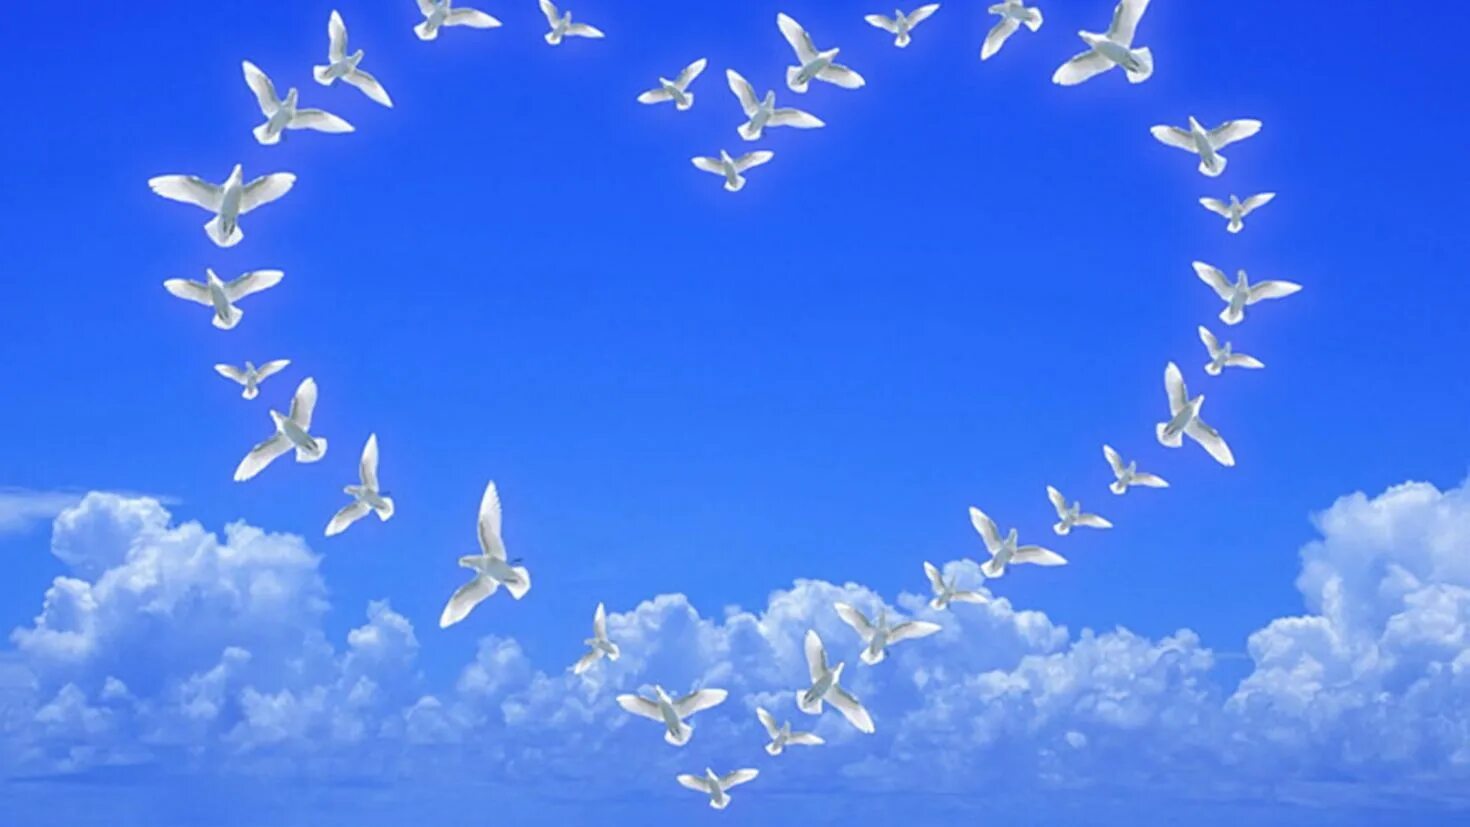 Как много на свете хороших. Сердечко в небе. Птицы в небе. Голубое мирное небо. Голуби в небе.